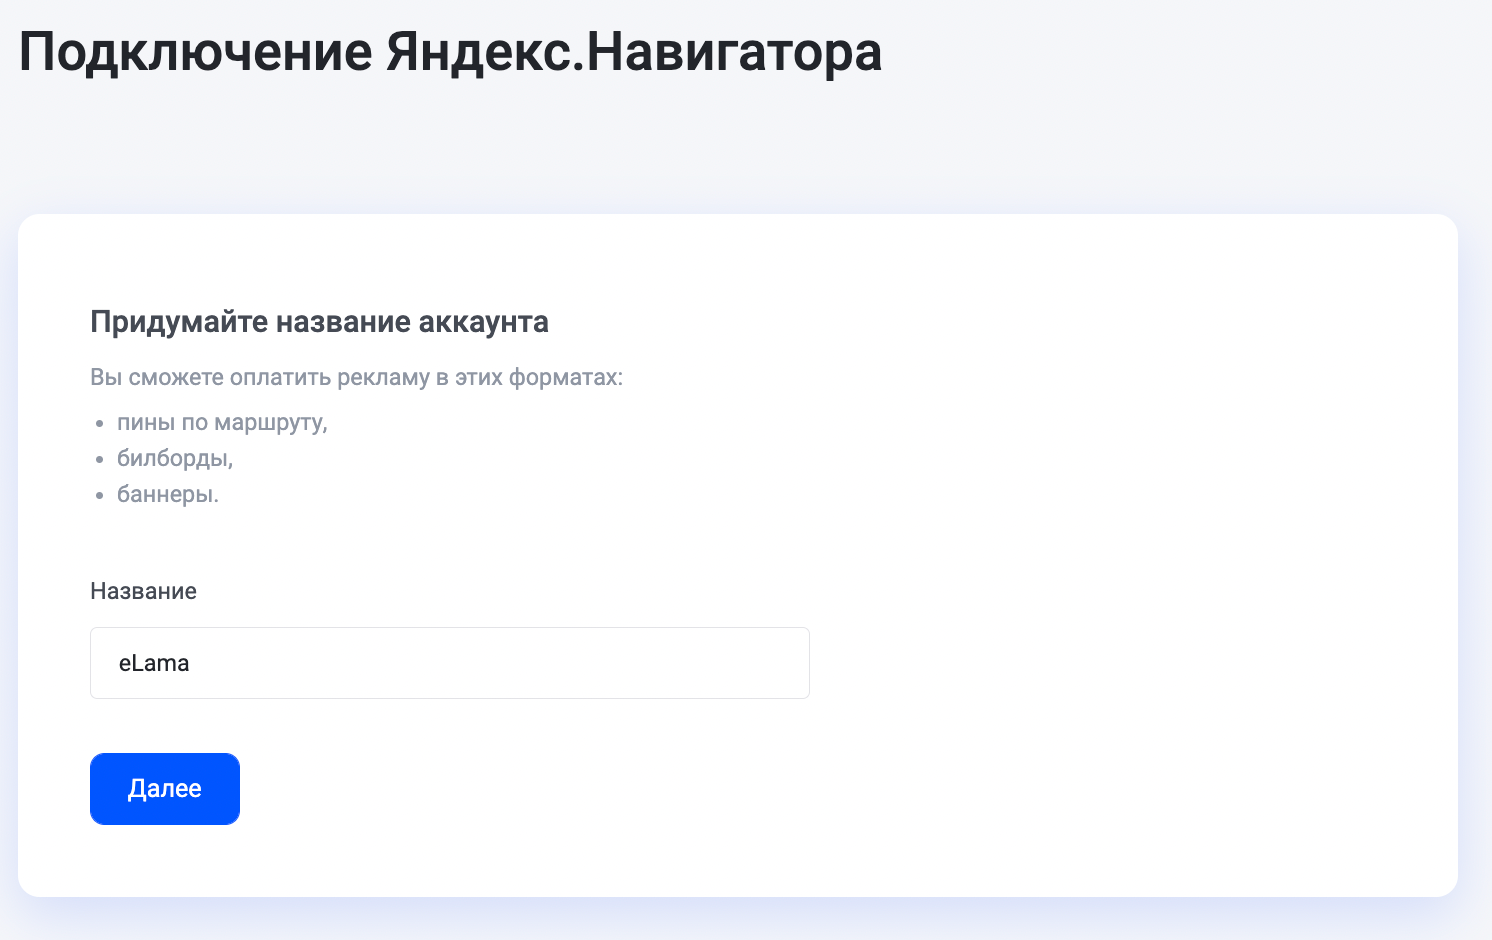 Подключение Яндекс Навигатора в eLama